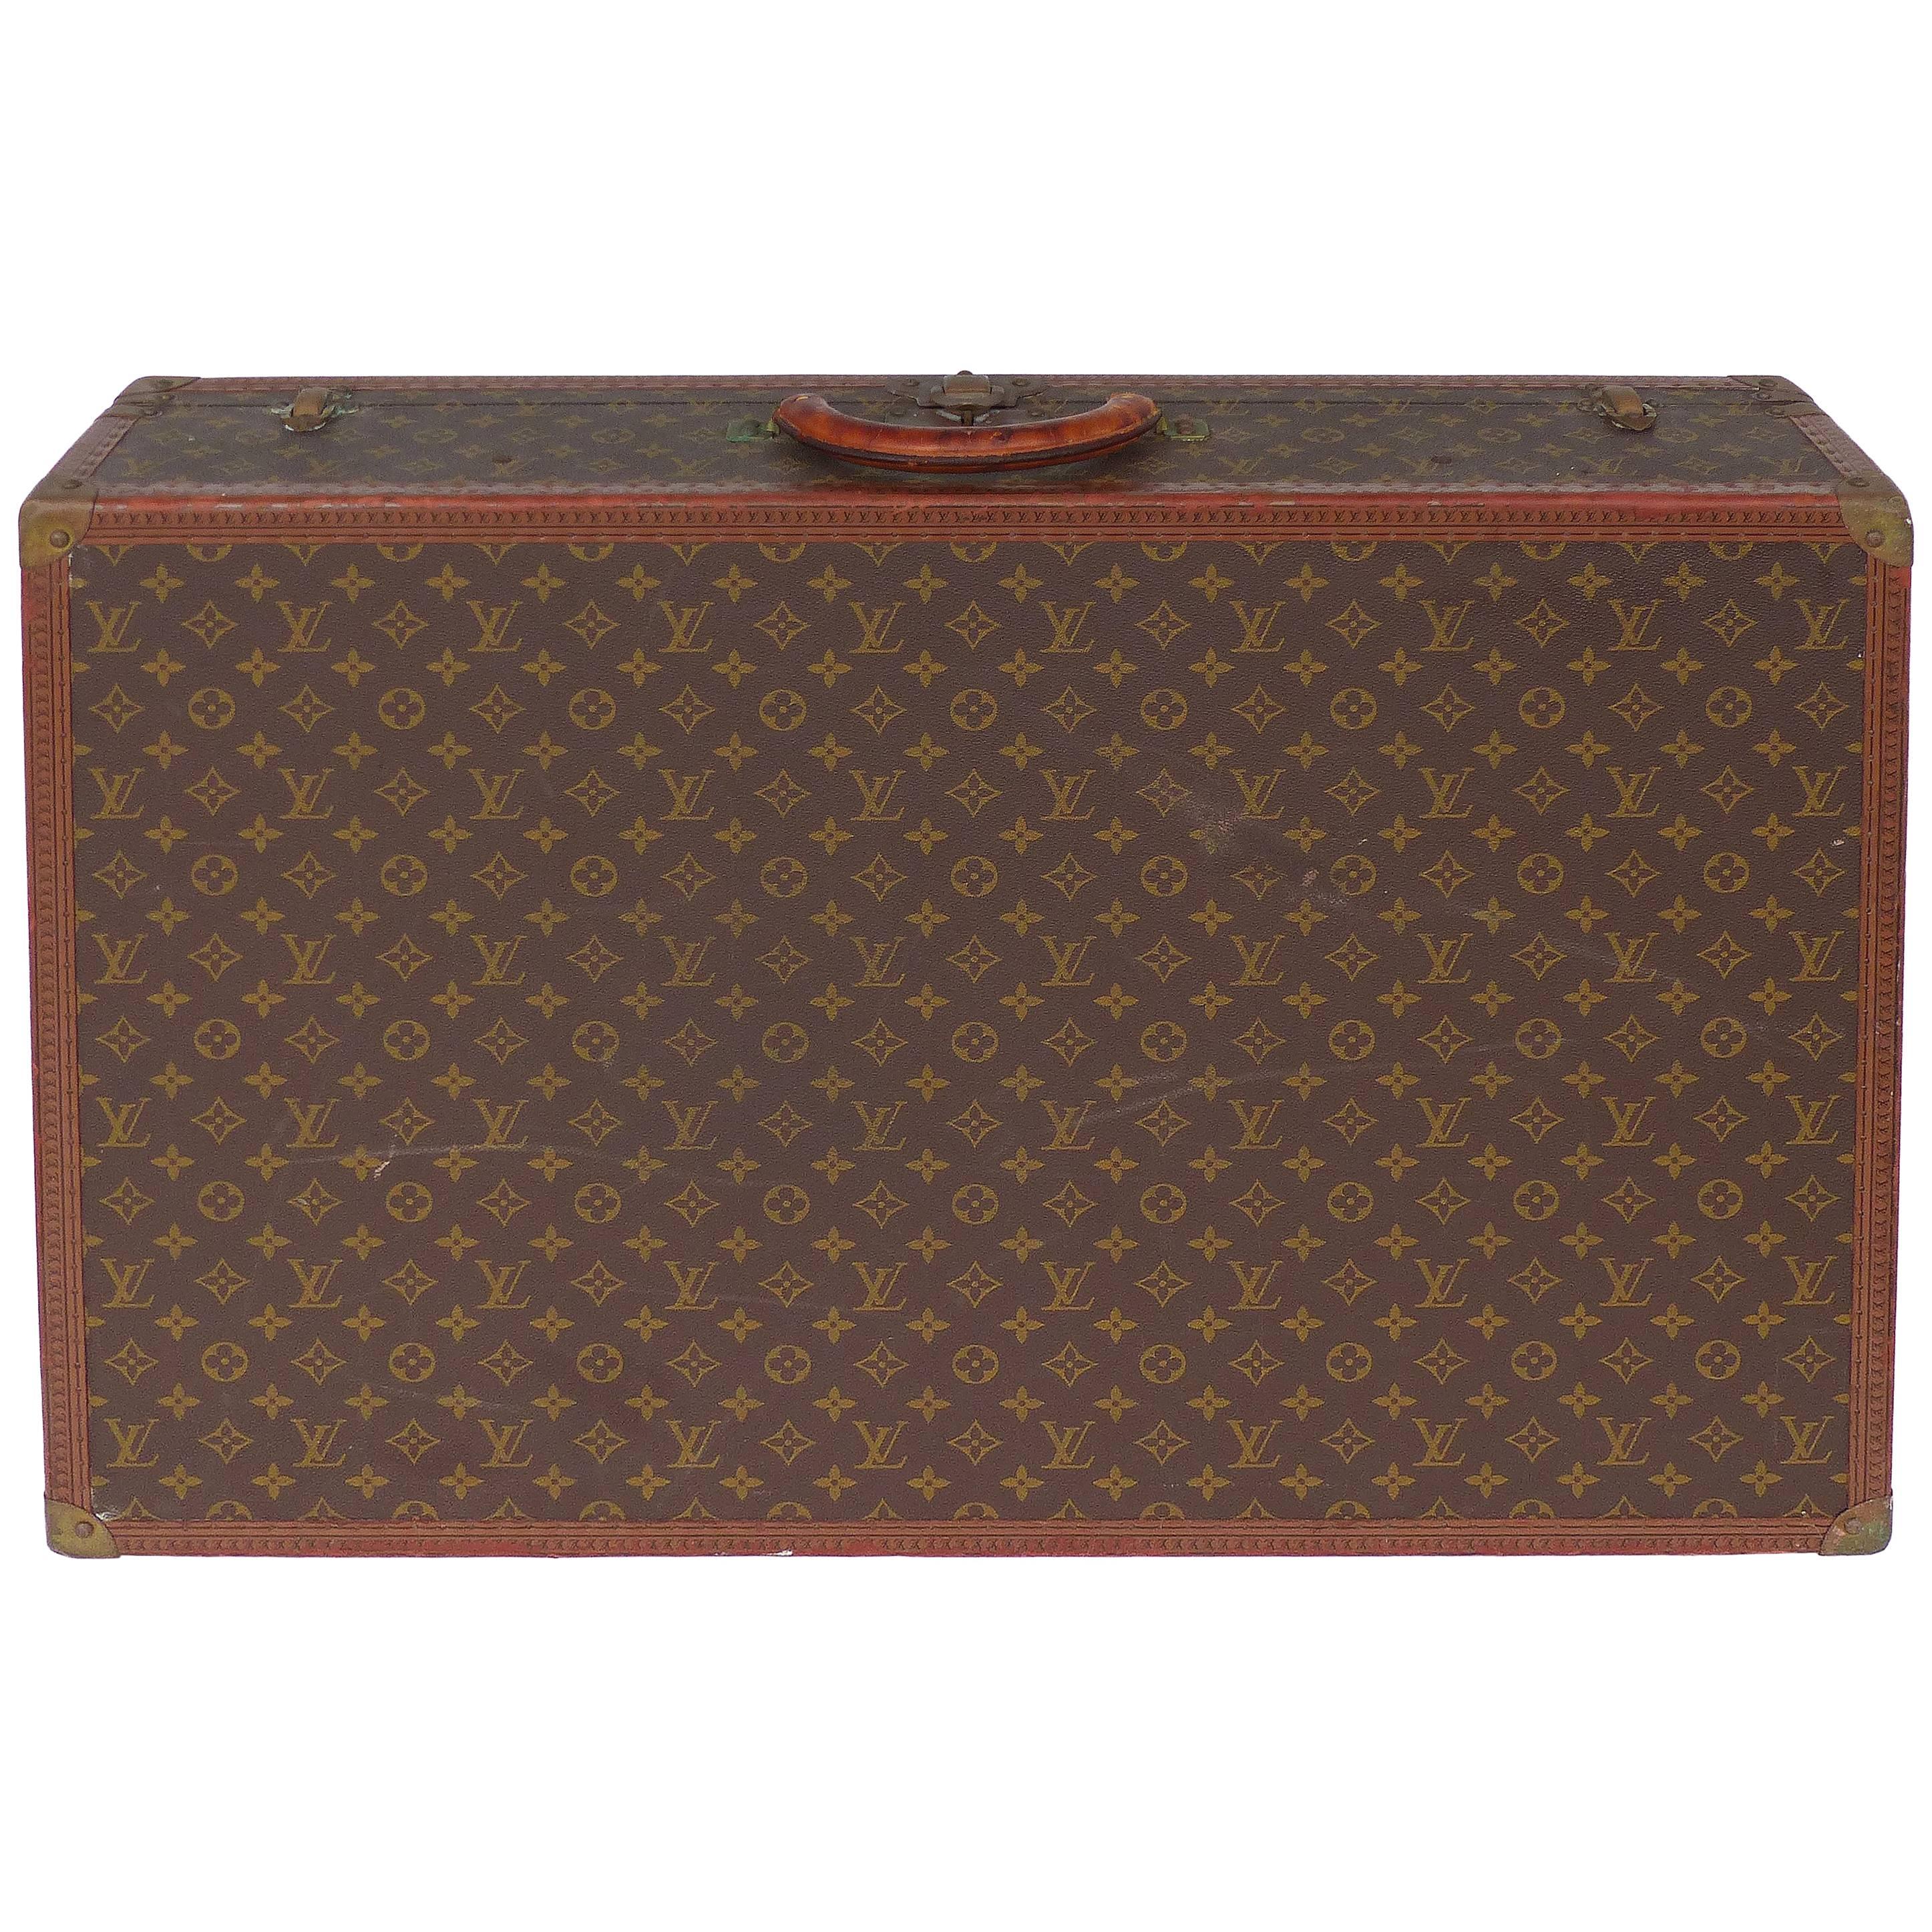 1950s Louis Vuitton Hard-Case Suitcase